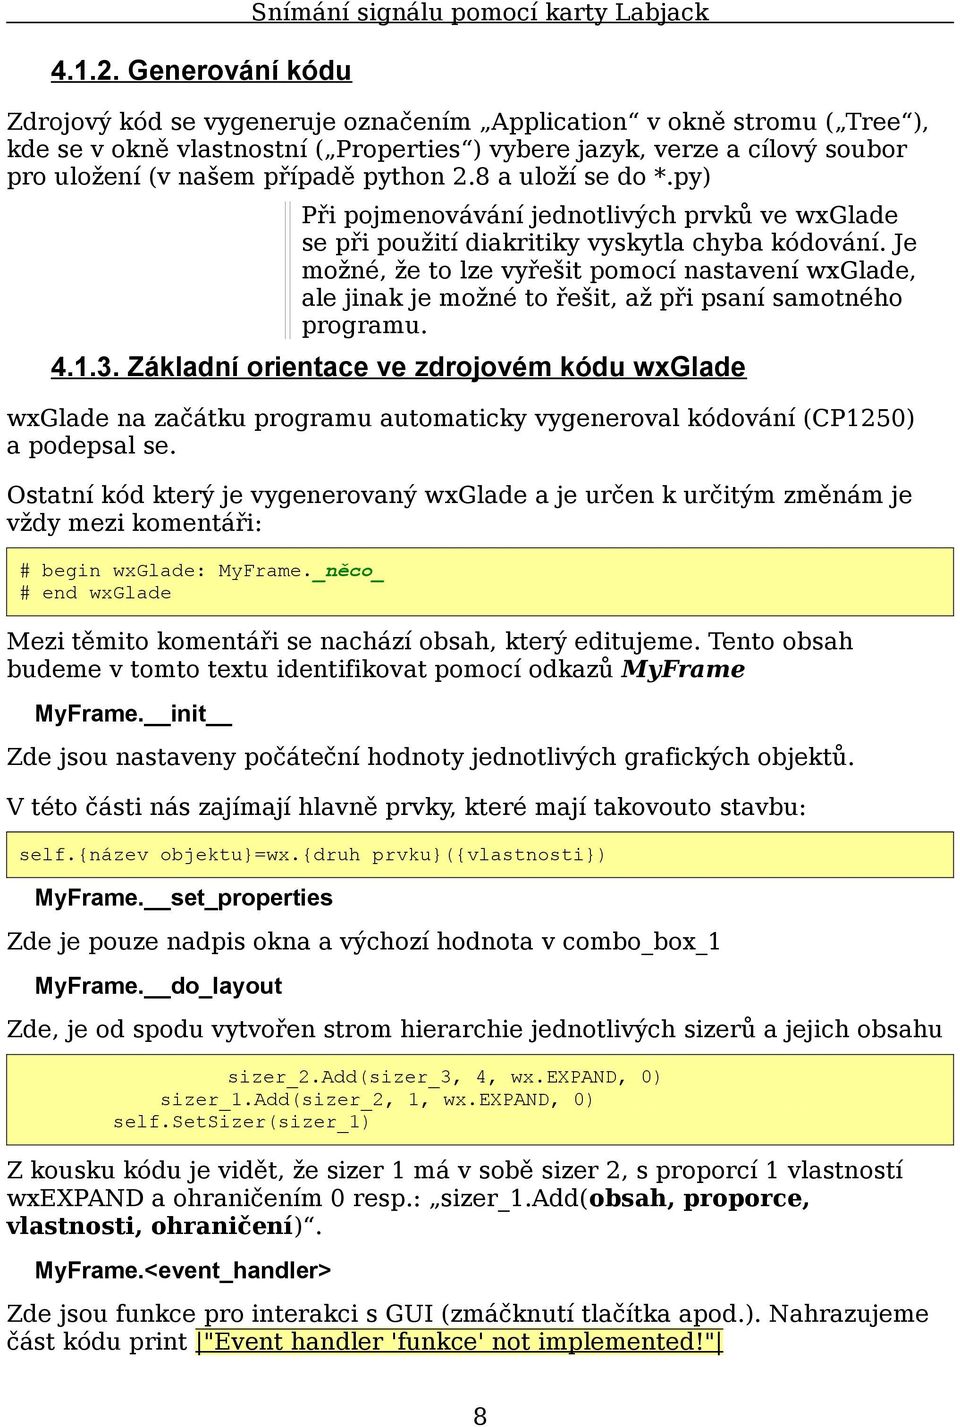 soubor pro uložení (v našem případě python 2.8 a uloží se do *.py) Při pojmenovávání jednotlivých prvků ve wxglade se při použití diakritiky vyskytla chyba kódování.